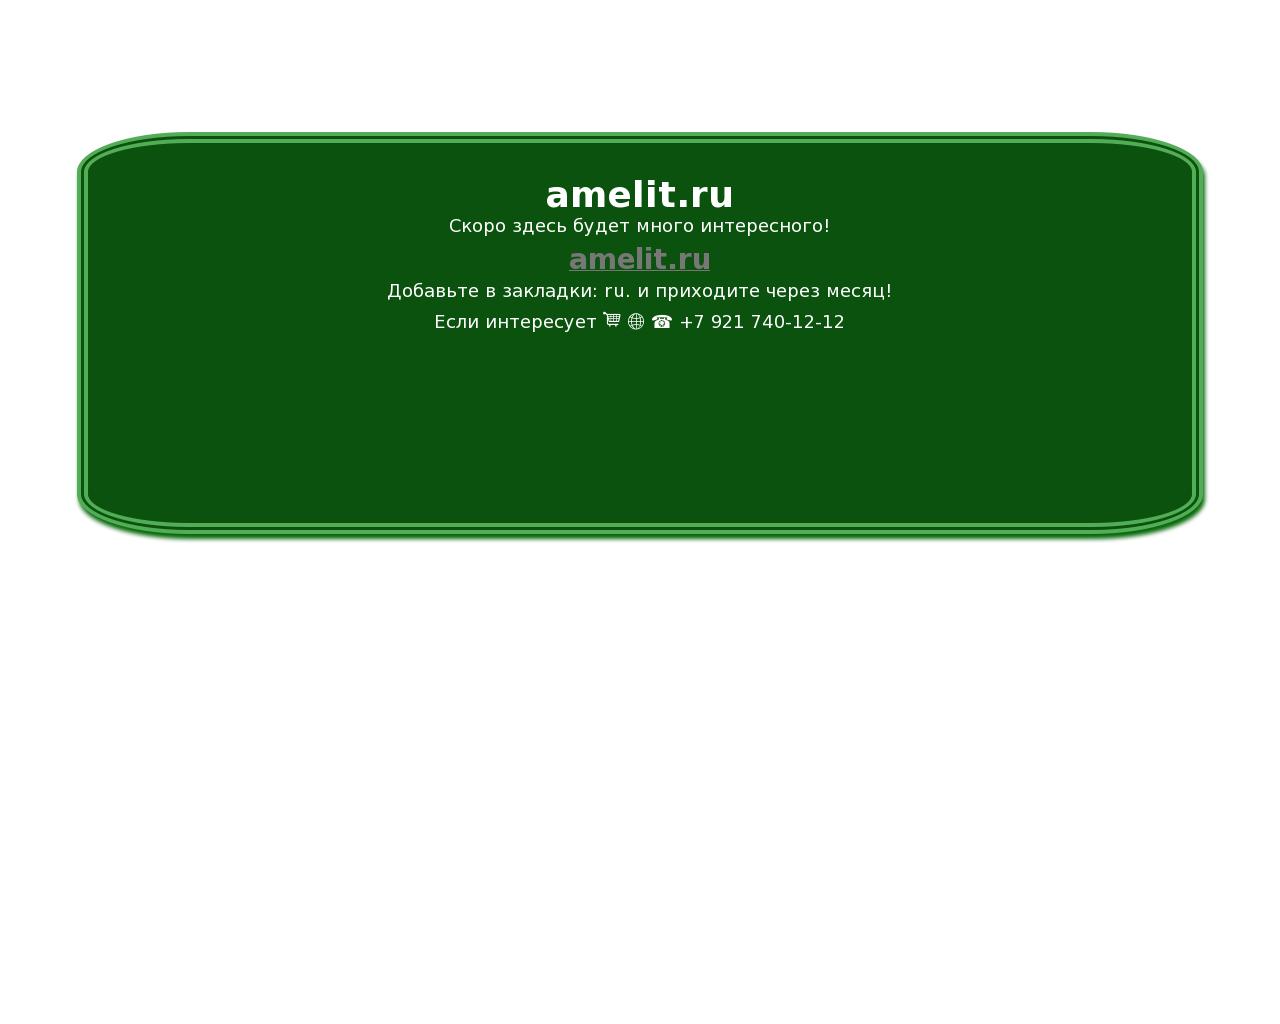 Изображение сайта amelit.ru в разрешении 1280x1024